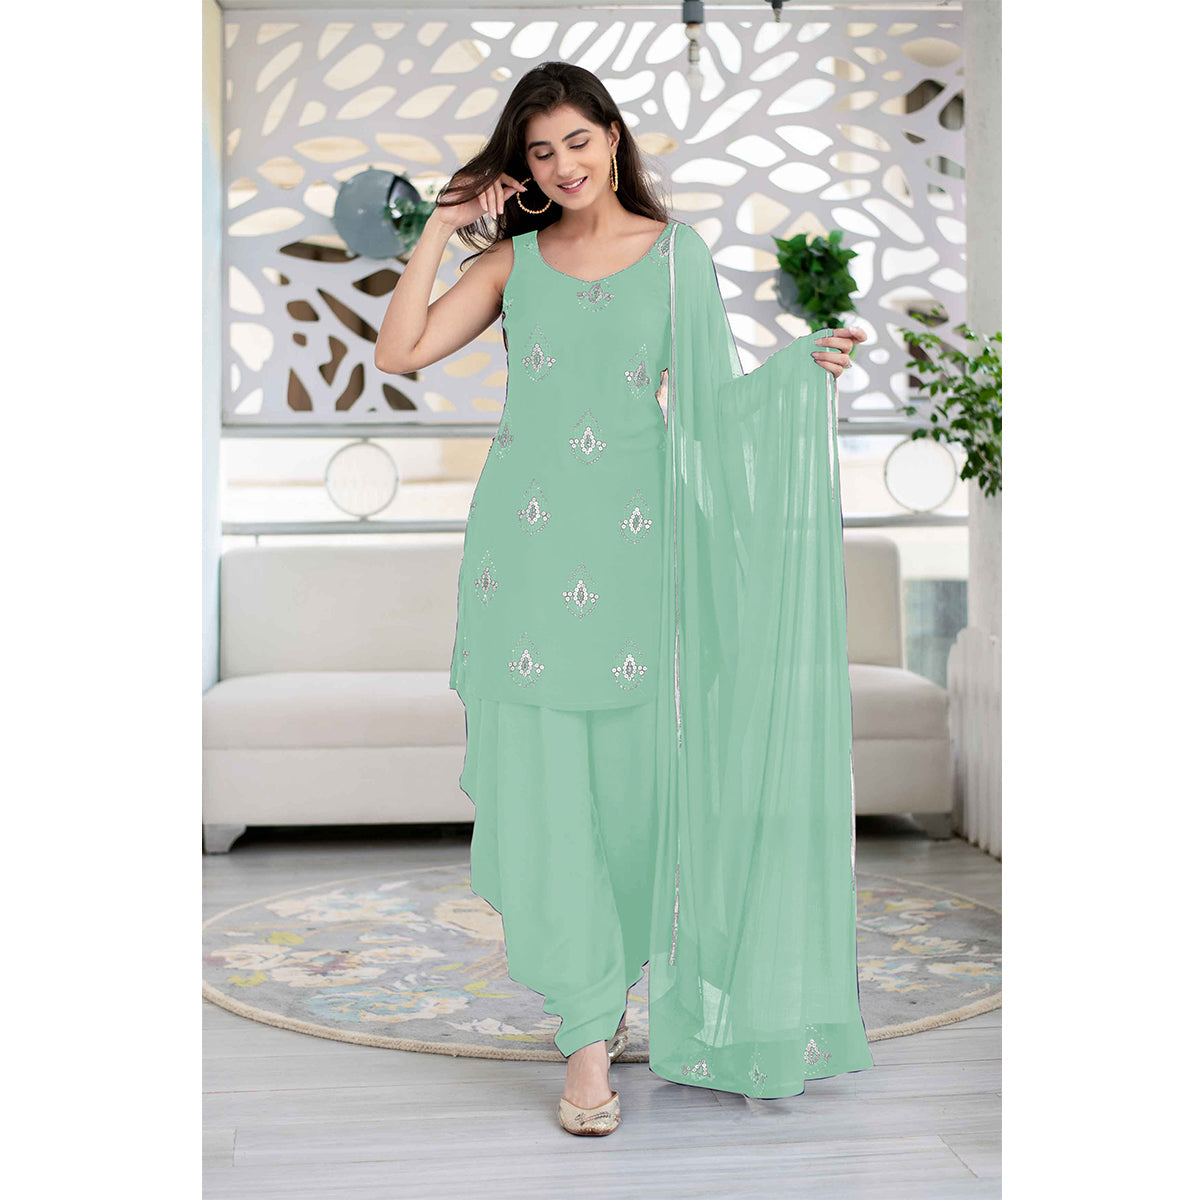 Shafnufab Georgette UnStitched Dress Material Sky blue Patiyala Salwar Suit